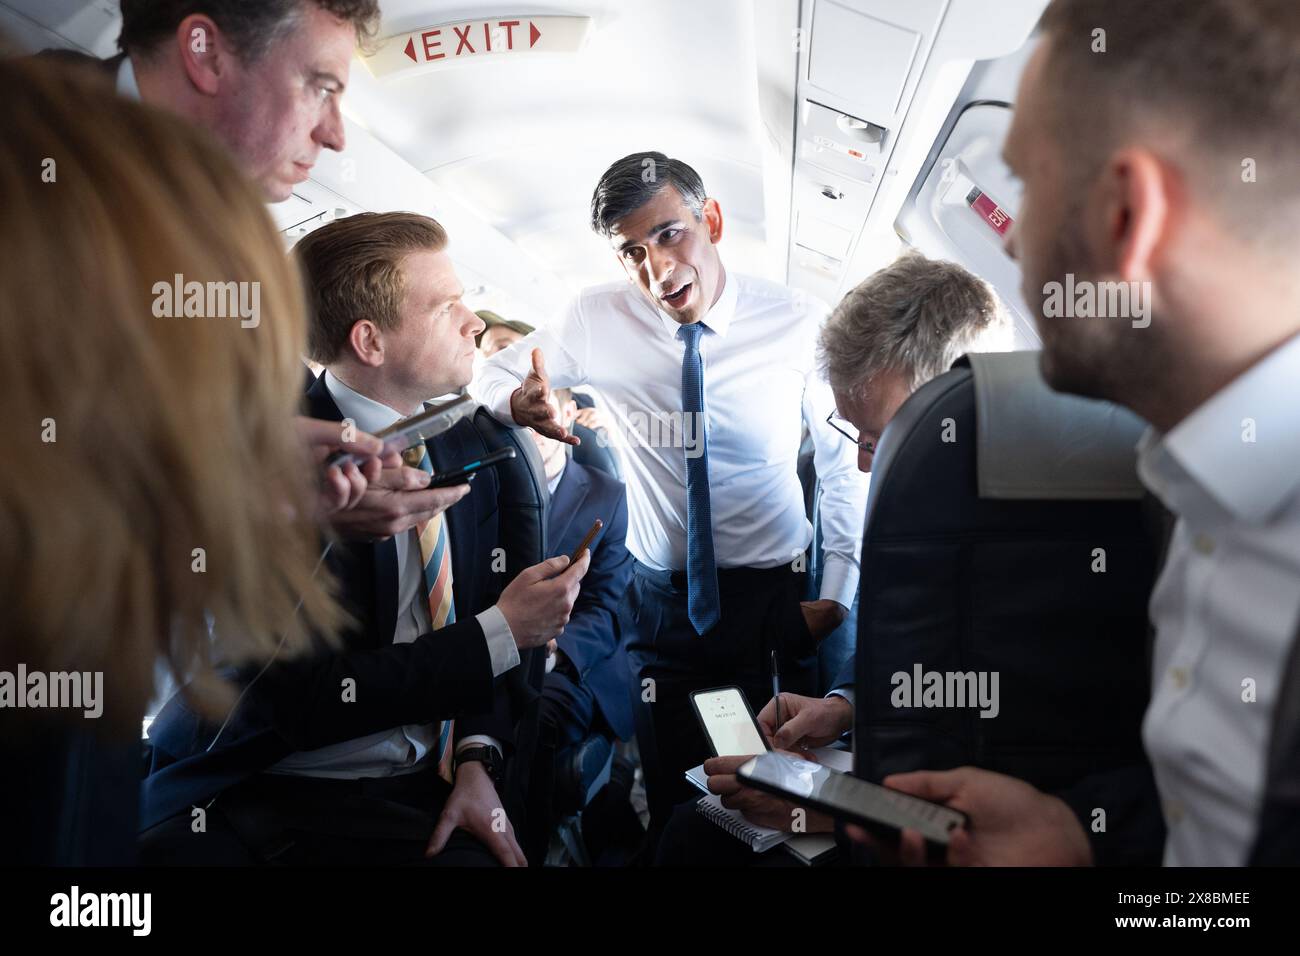 Premierminister Rishi Sunak spricht mit Journalisten in seinem Flugzeug, während er während eines Wahlkampfes für die diesjährigen Parlamentswahlen am 4. Juli von Nordirland nach Birmingham reist. Bilddatum: Freitag, 24. Mai 2024. Stockfoto